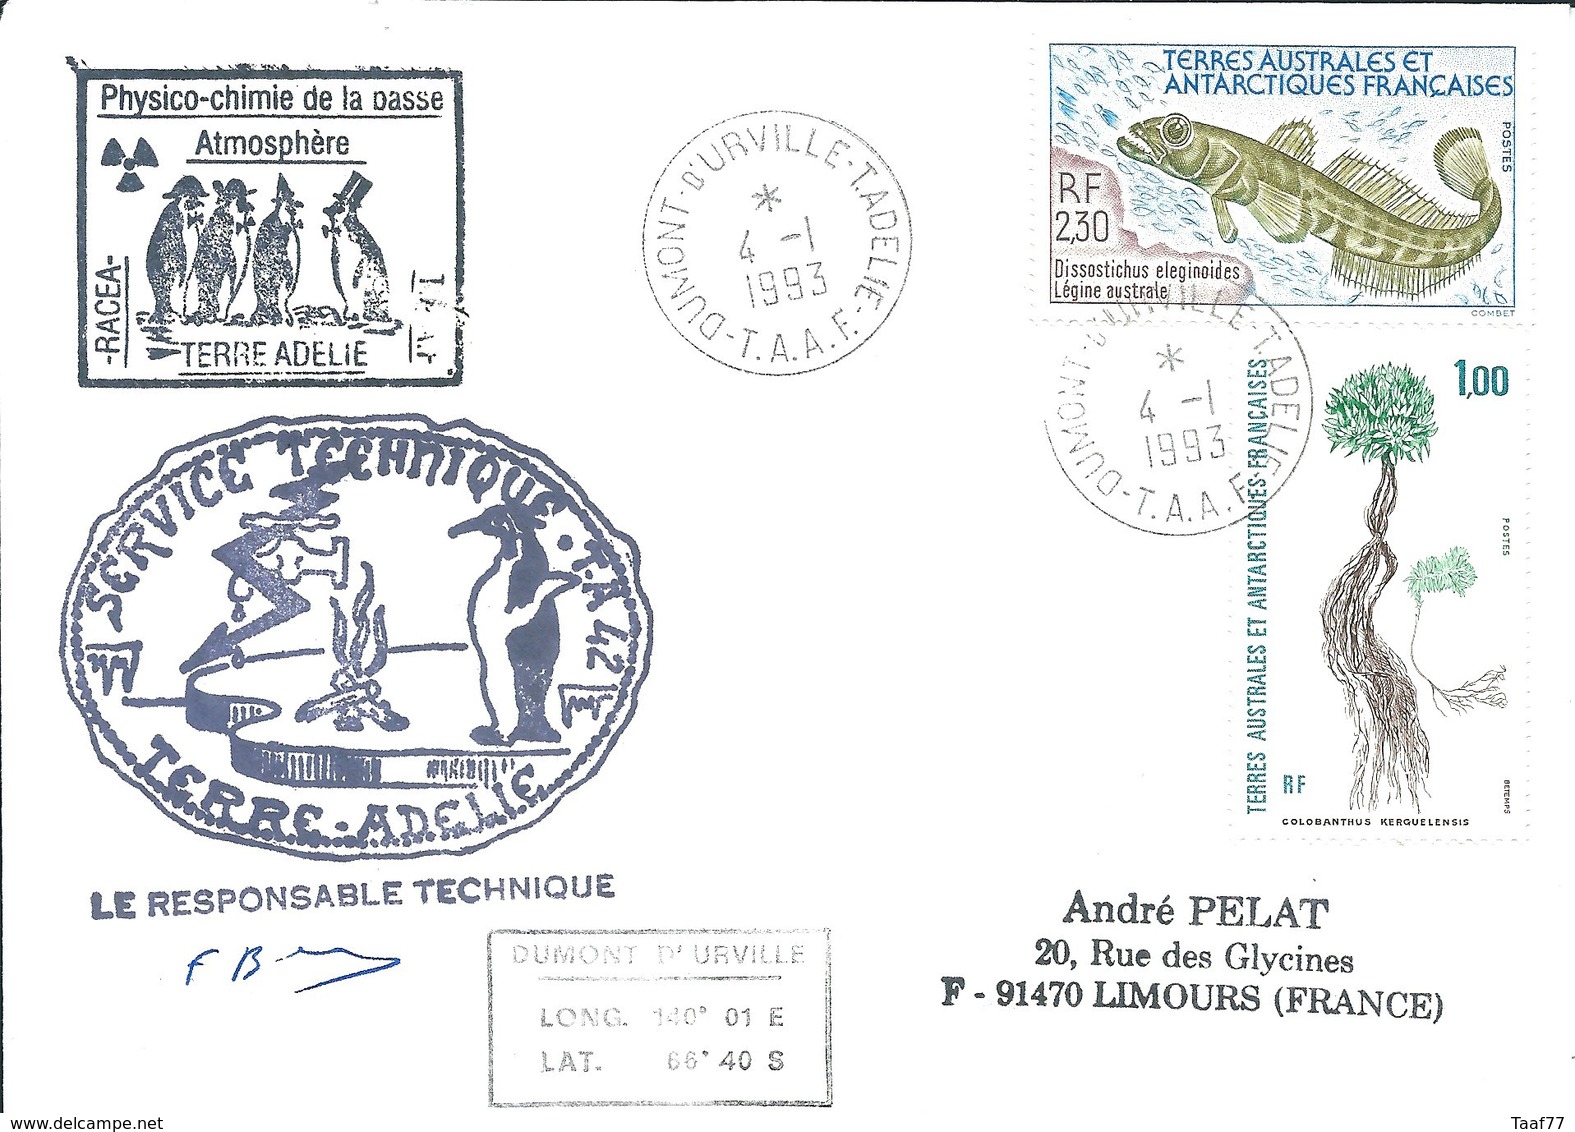 TAAF - Dumont D'Urville-T.Adélie: Lettre Avec Timbres N°164 Flore Et N°166 Légine Australe - 04/01/1993 - Covers & Documents